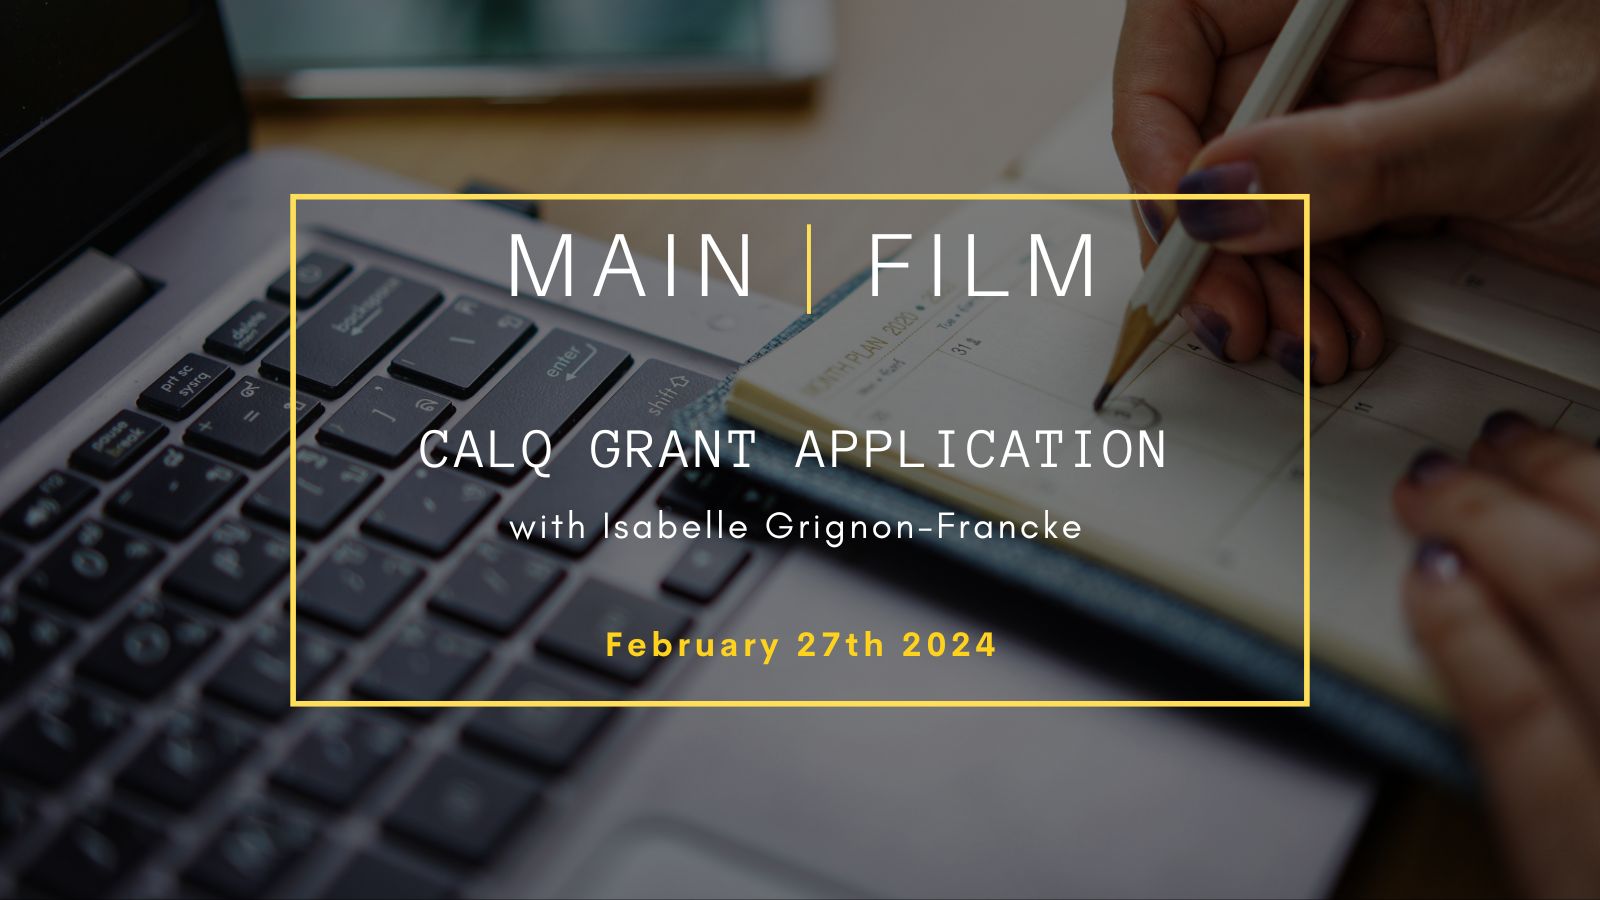 CALQ Grant Application